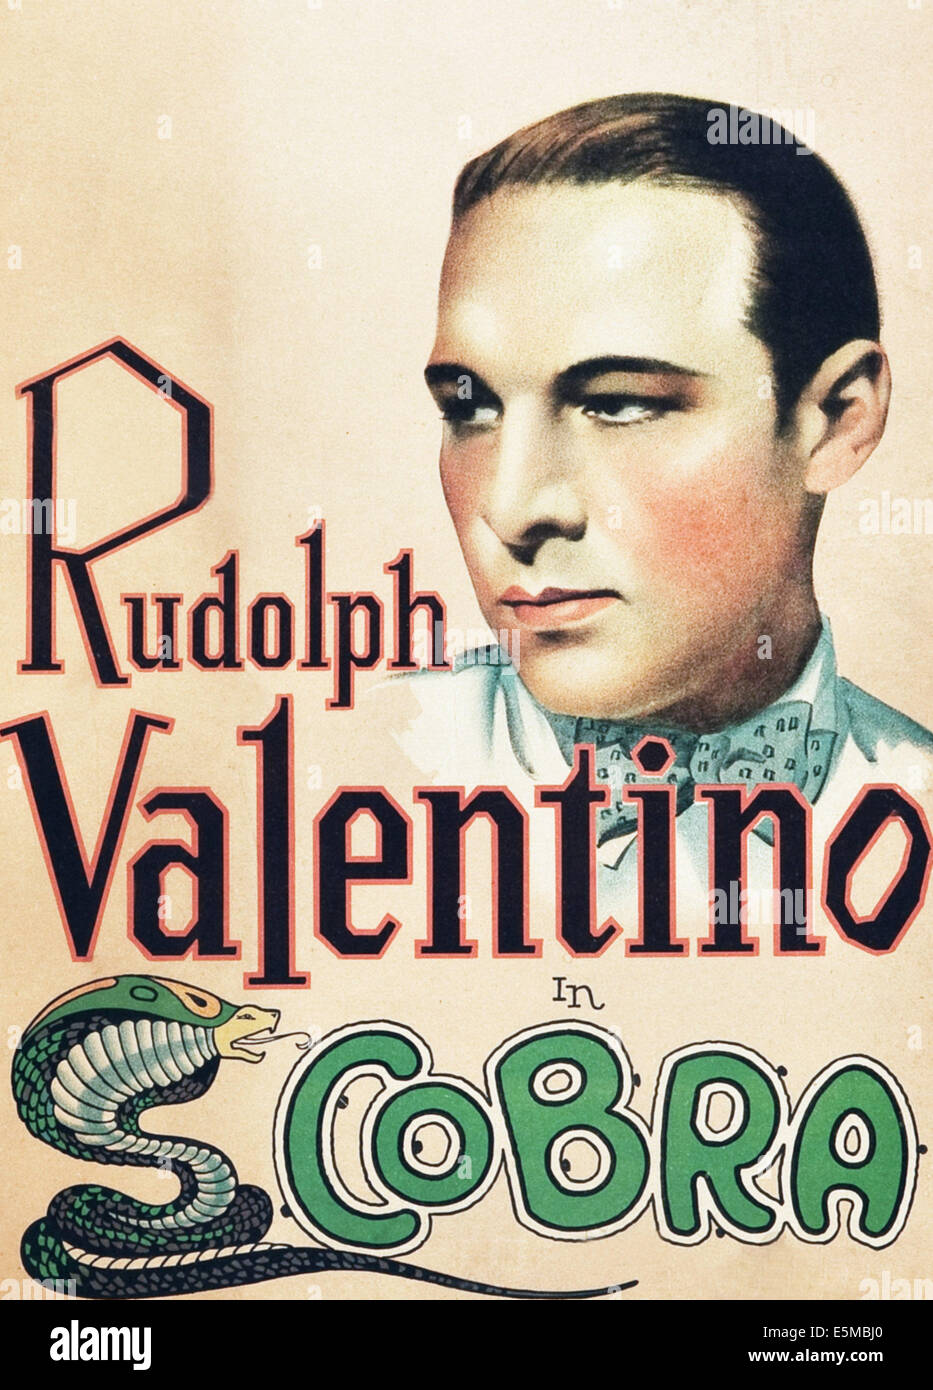 COBRA, Rodolfo Valentino, sulla locandina, 1925. Foto Stock